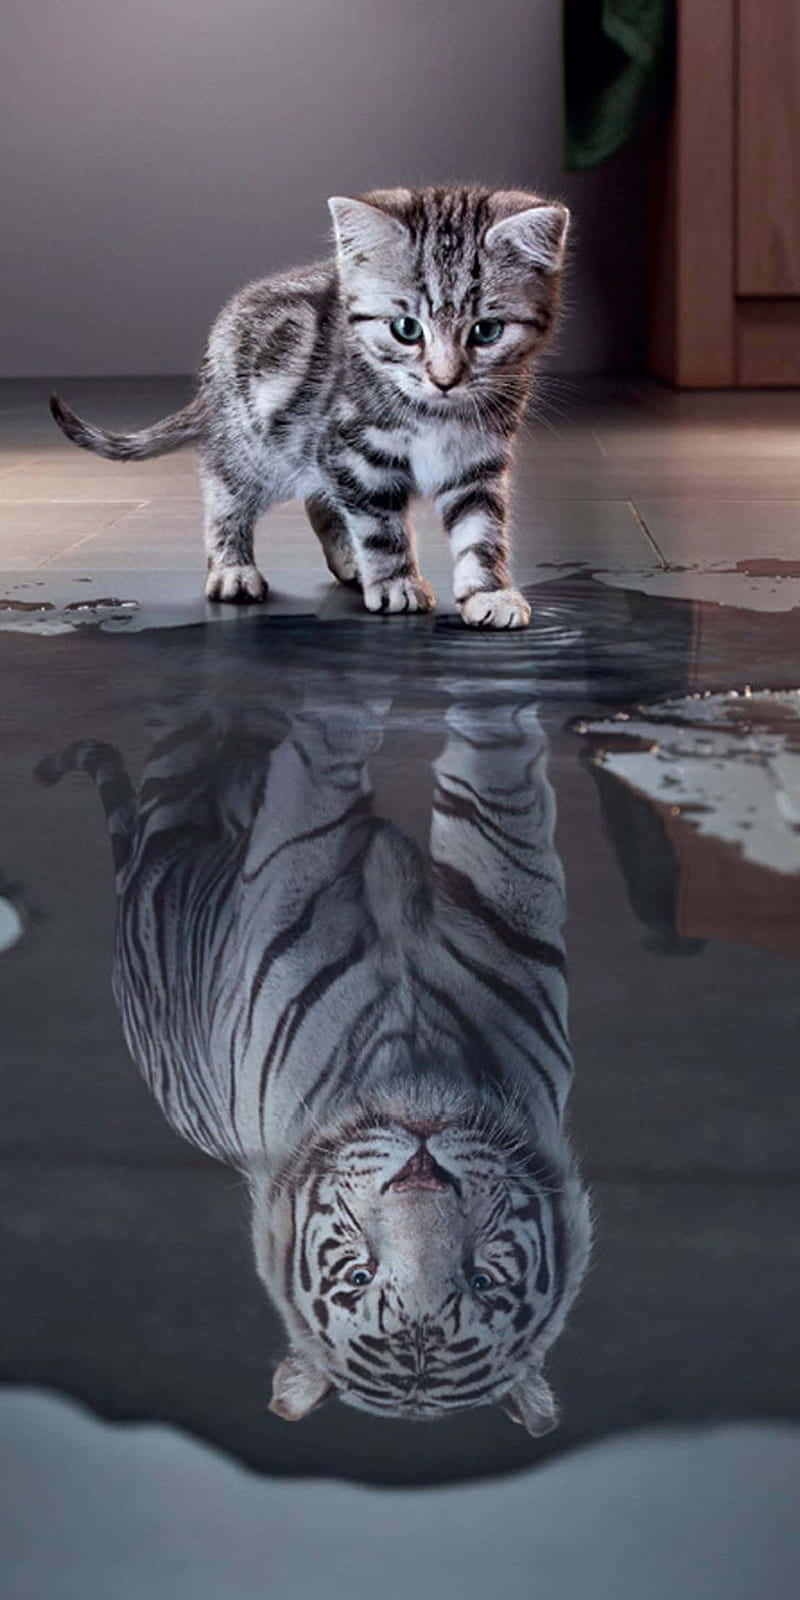 Boss Cat Reflection Wallpaper